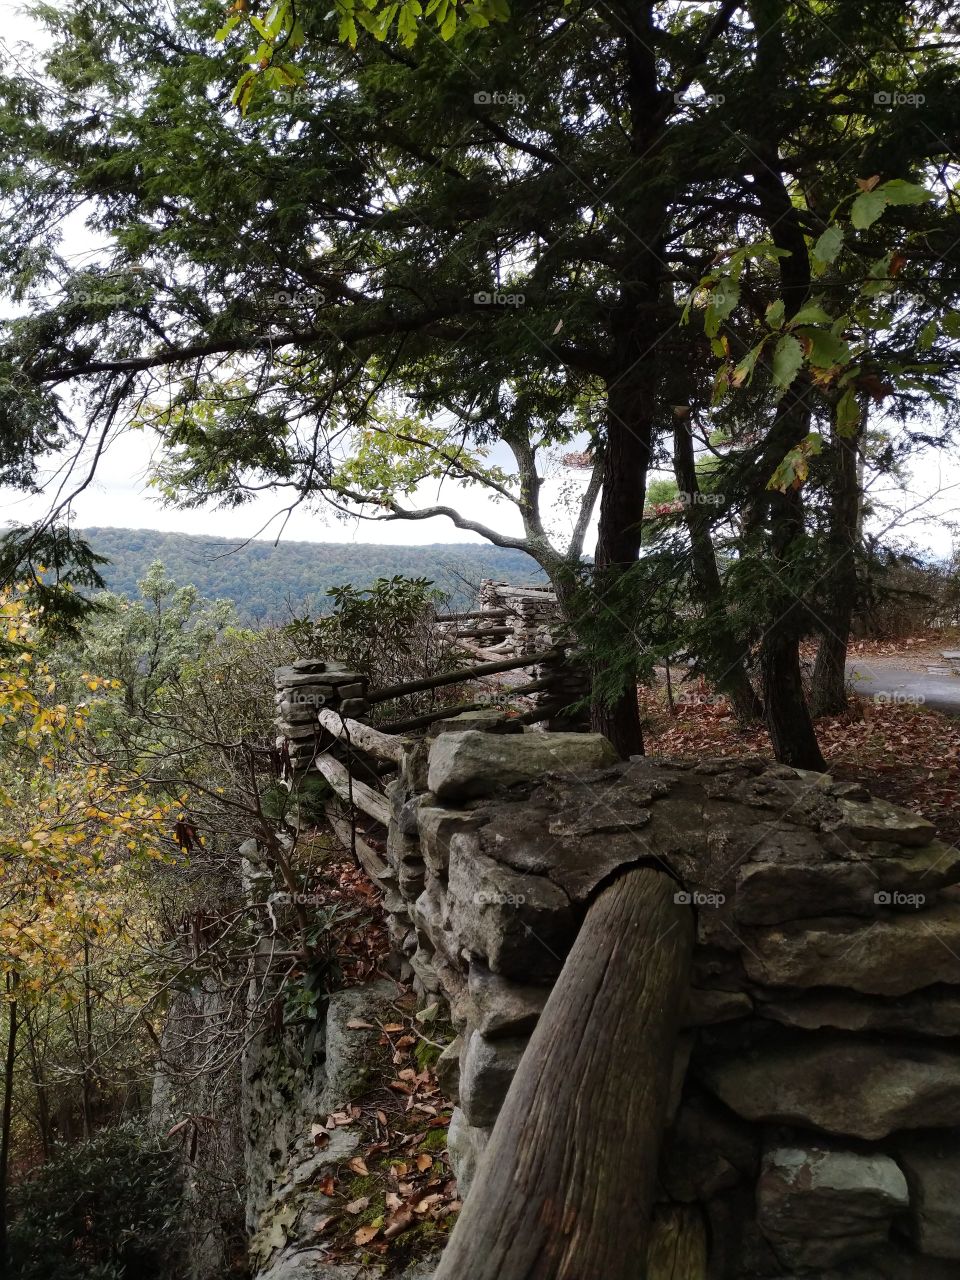 Coopers Rock, West Virginia